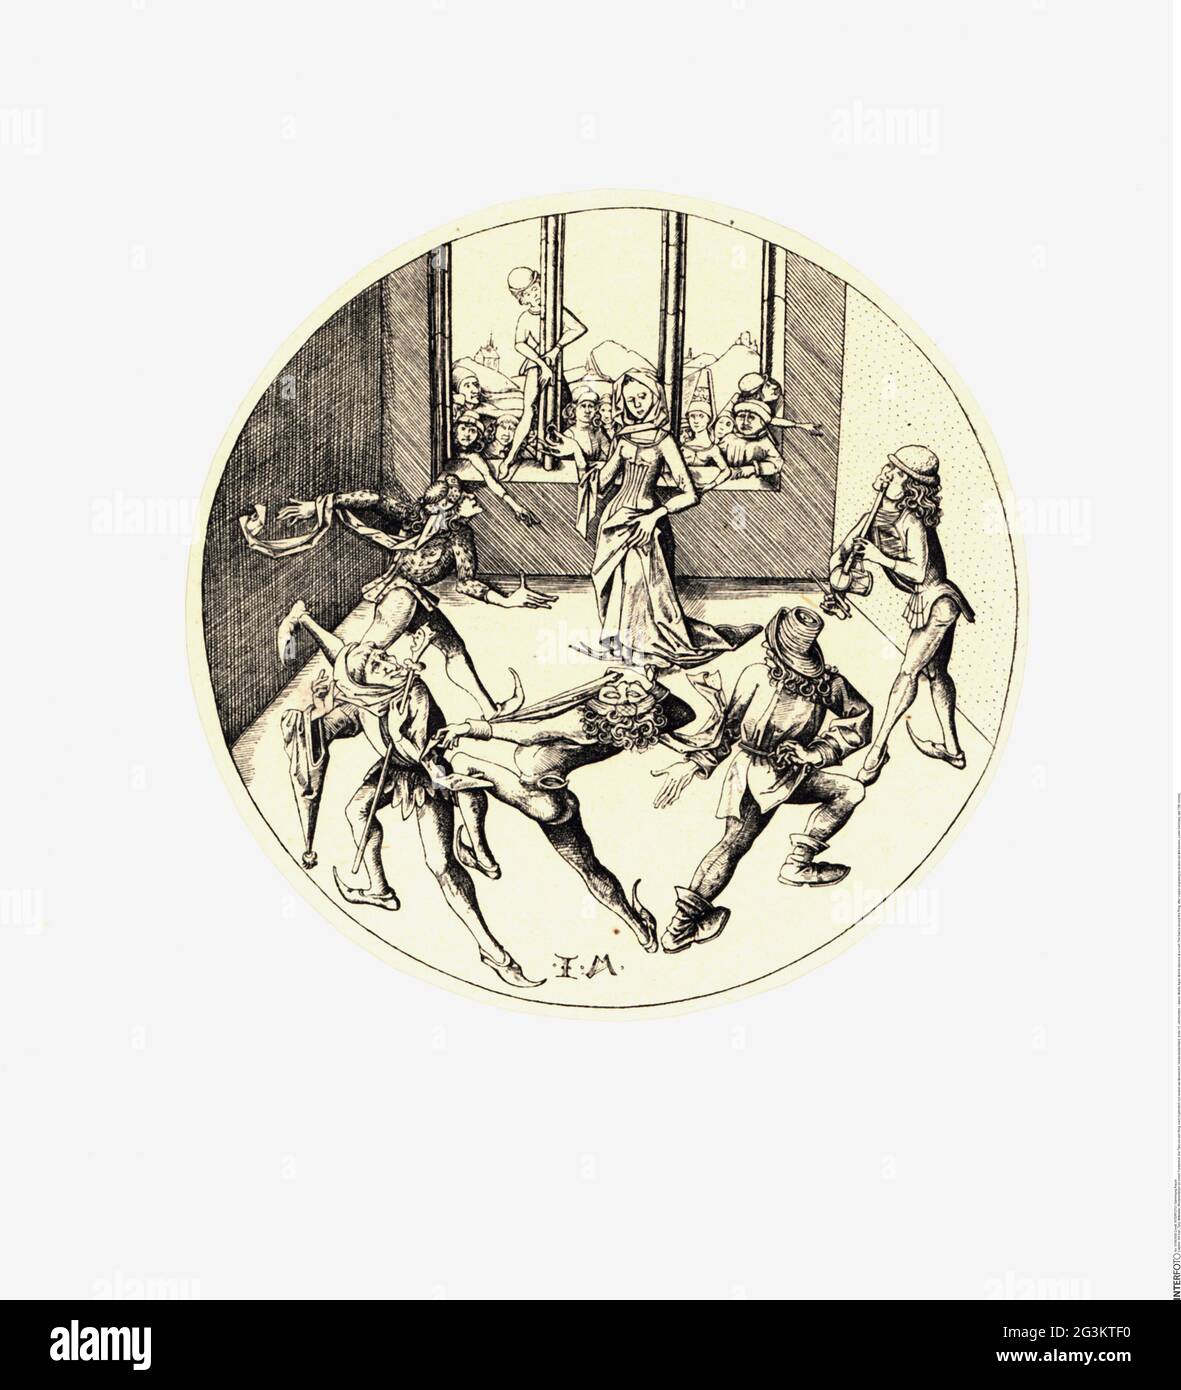 Danse, Moyen âge, danseuses Morris à un tribunal, la danse autour de l'anneau, LE DROIT D'AUTEUR DE L'ARTISTE N'A PAS À ÊTRE AUTORISÉ Banque D'Images